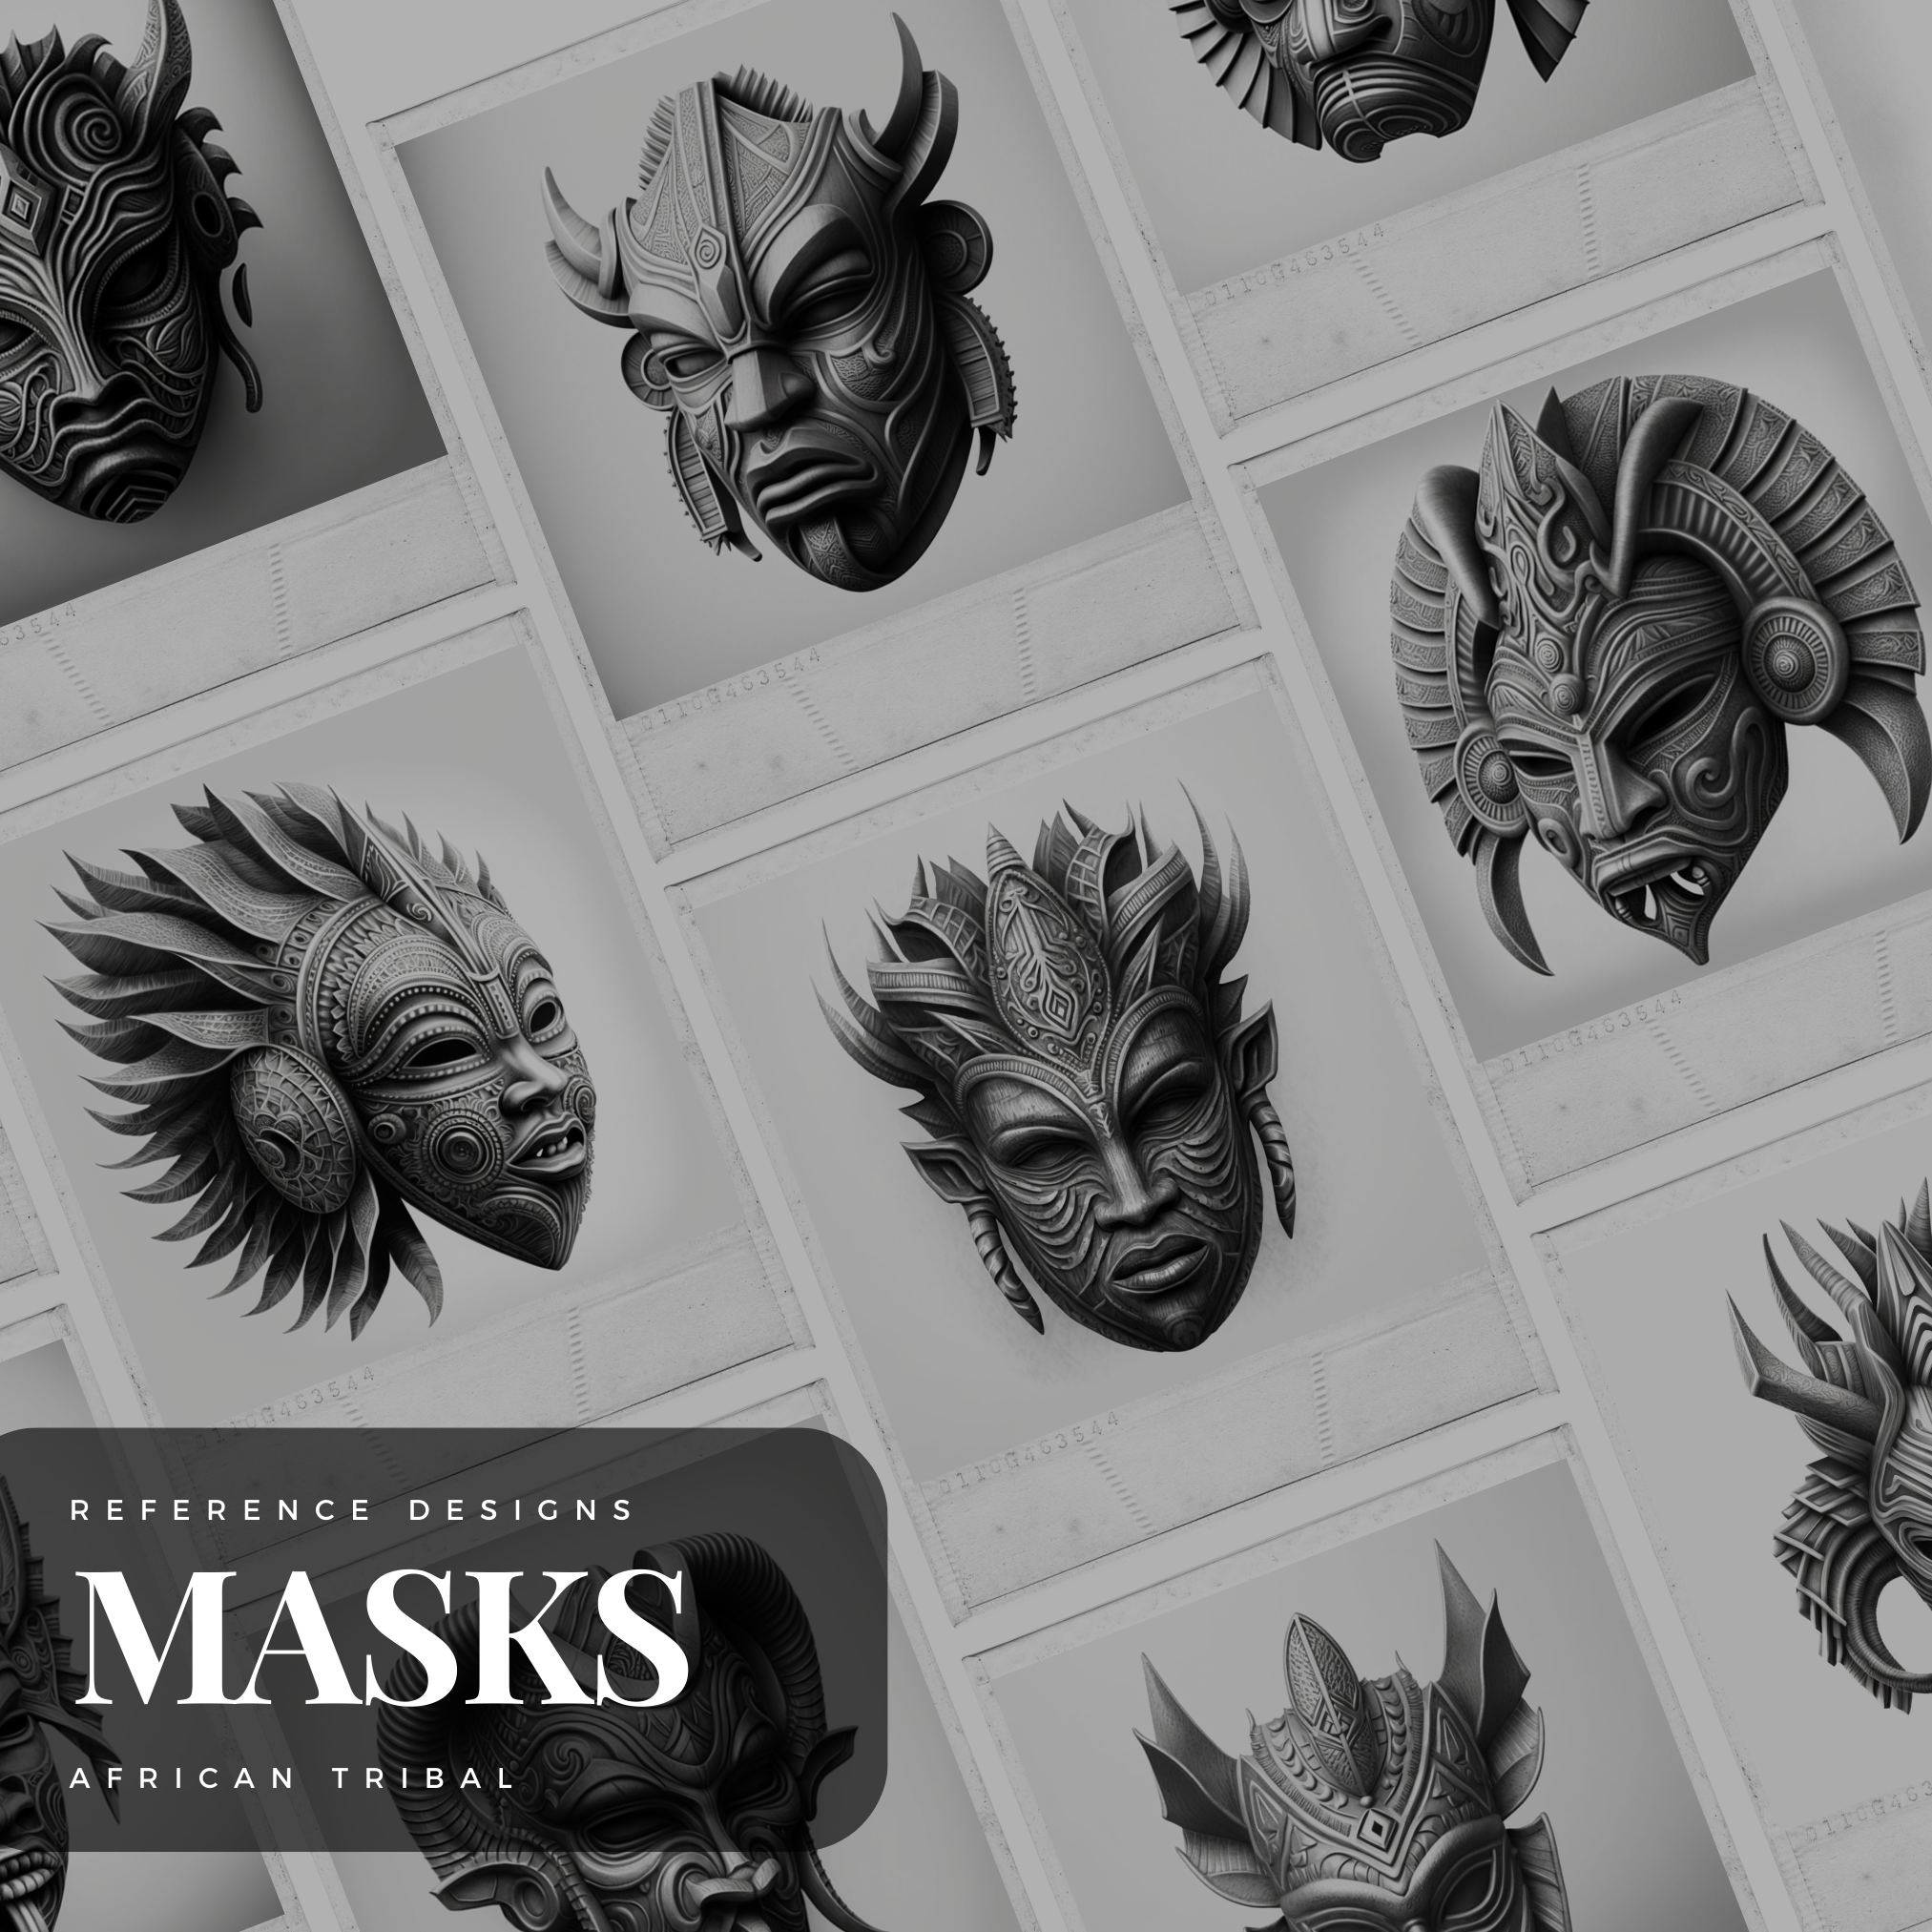 Colección de diseños de referencia digital de máscaras culturales africanas: 50 imágenes de Procreate y Sketchbook